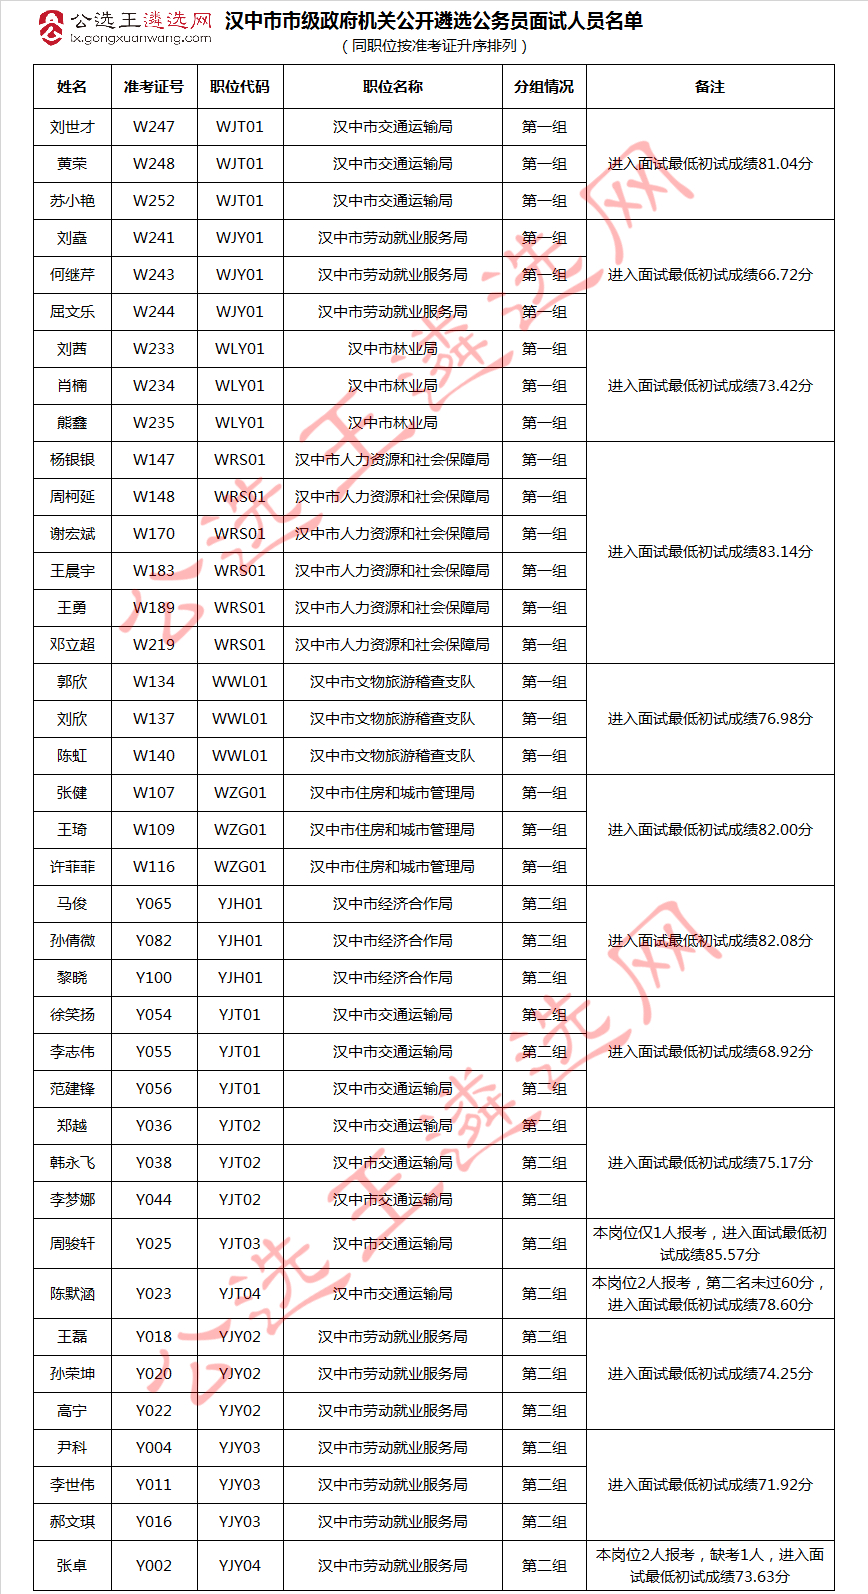 汉中市市级政府机关公开遴选公务员面试人员名单.jpg